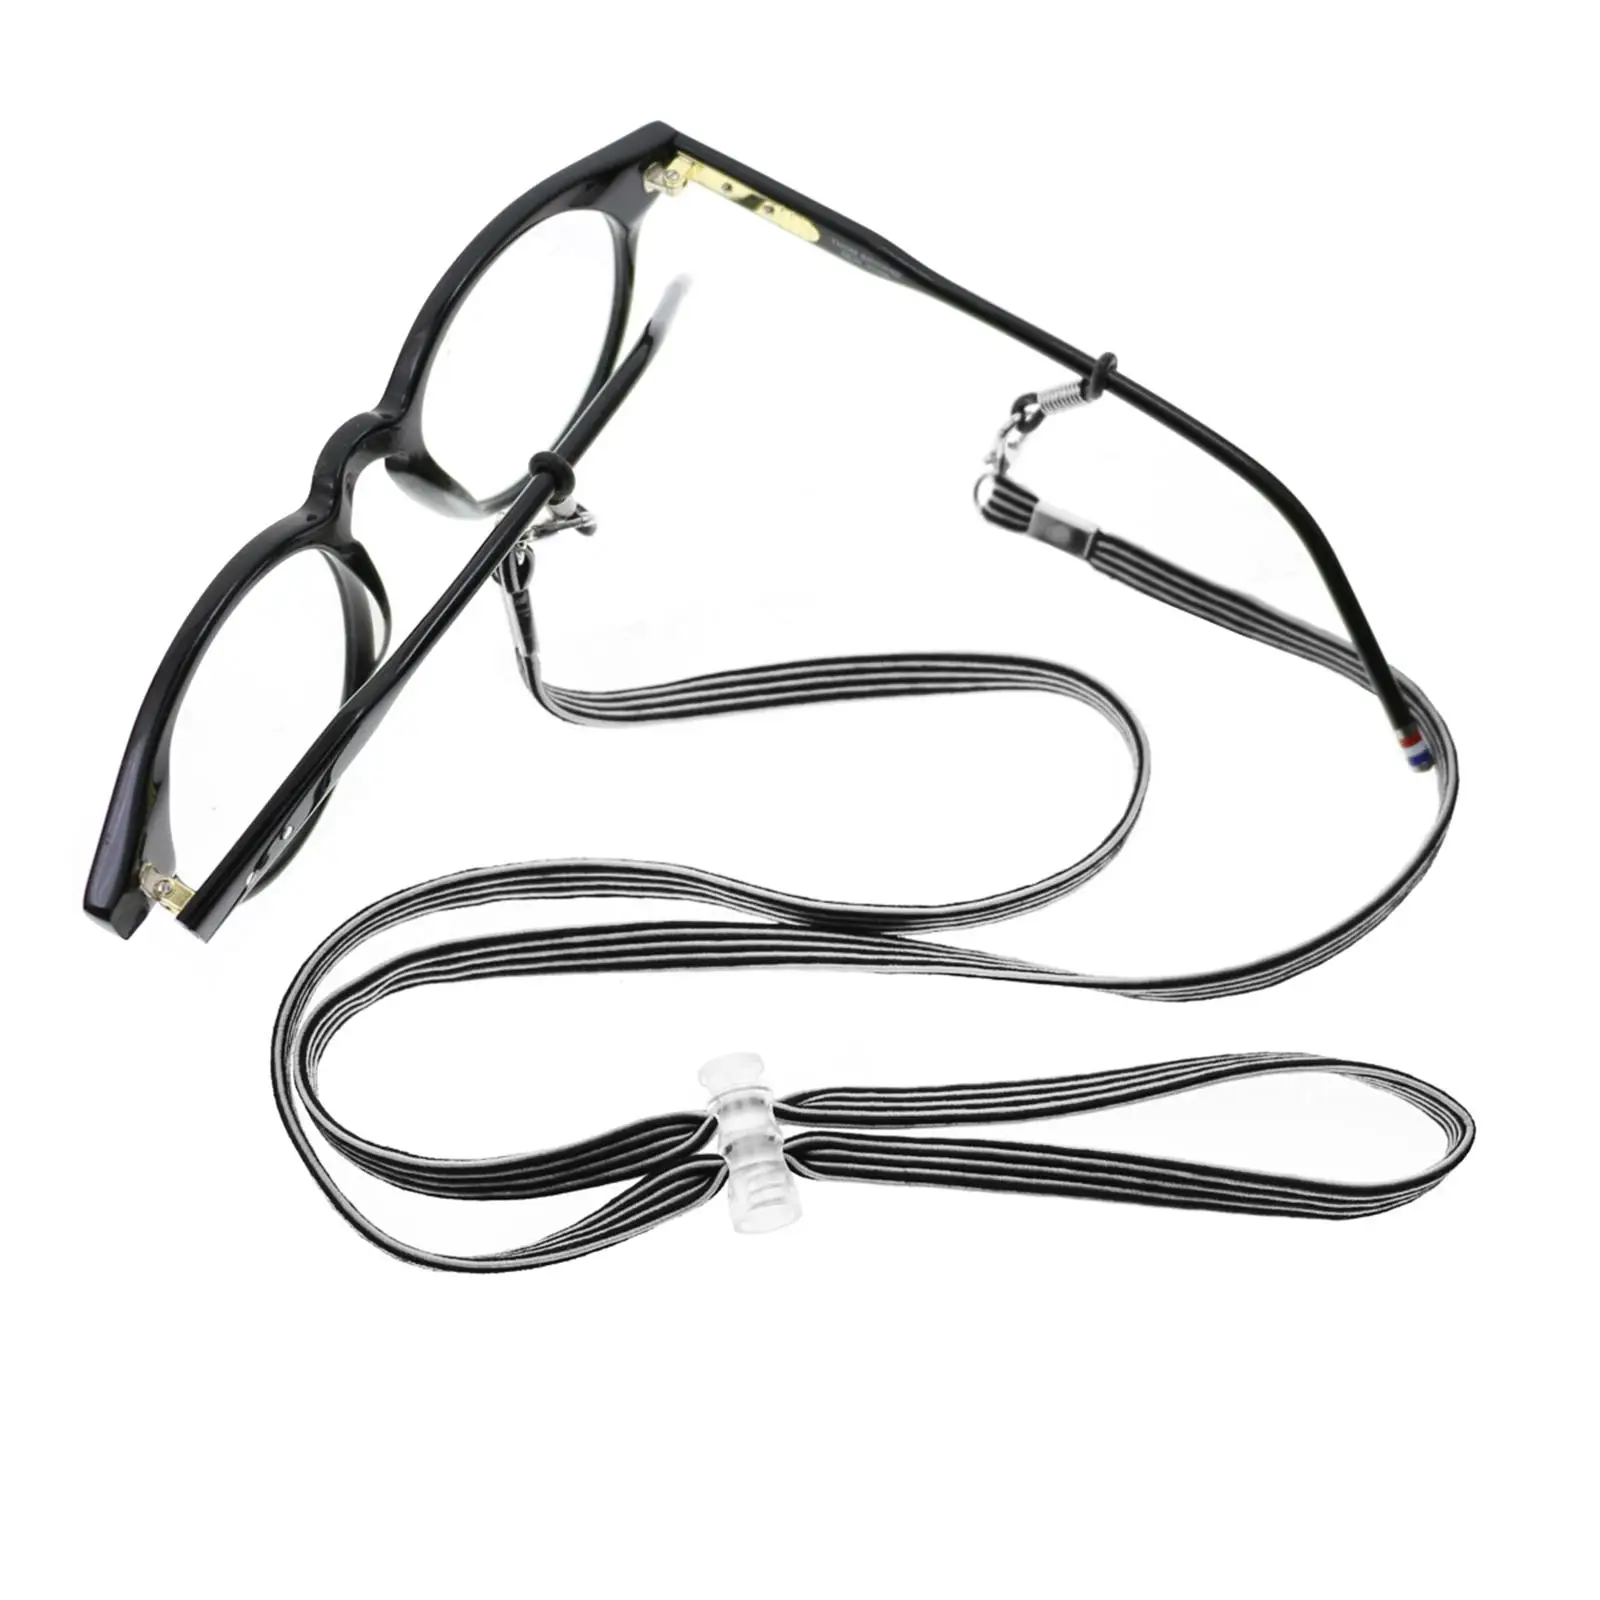 5x Eyeglass Strap Anti Slip Eyeglass Chains Lanyard Neck Lanyard Eyewear Retainer Glasses Strap for Men and Women Adult Kids